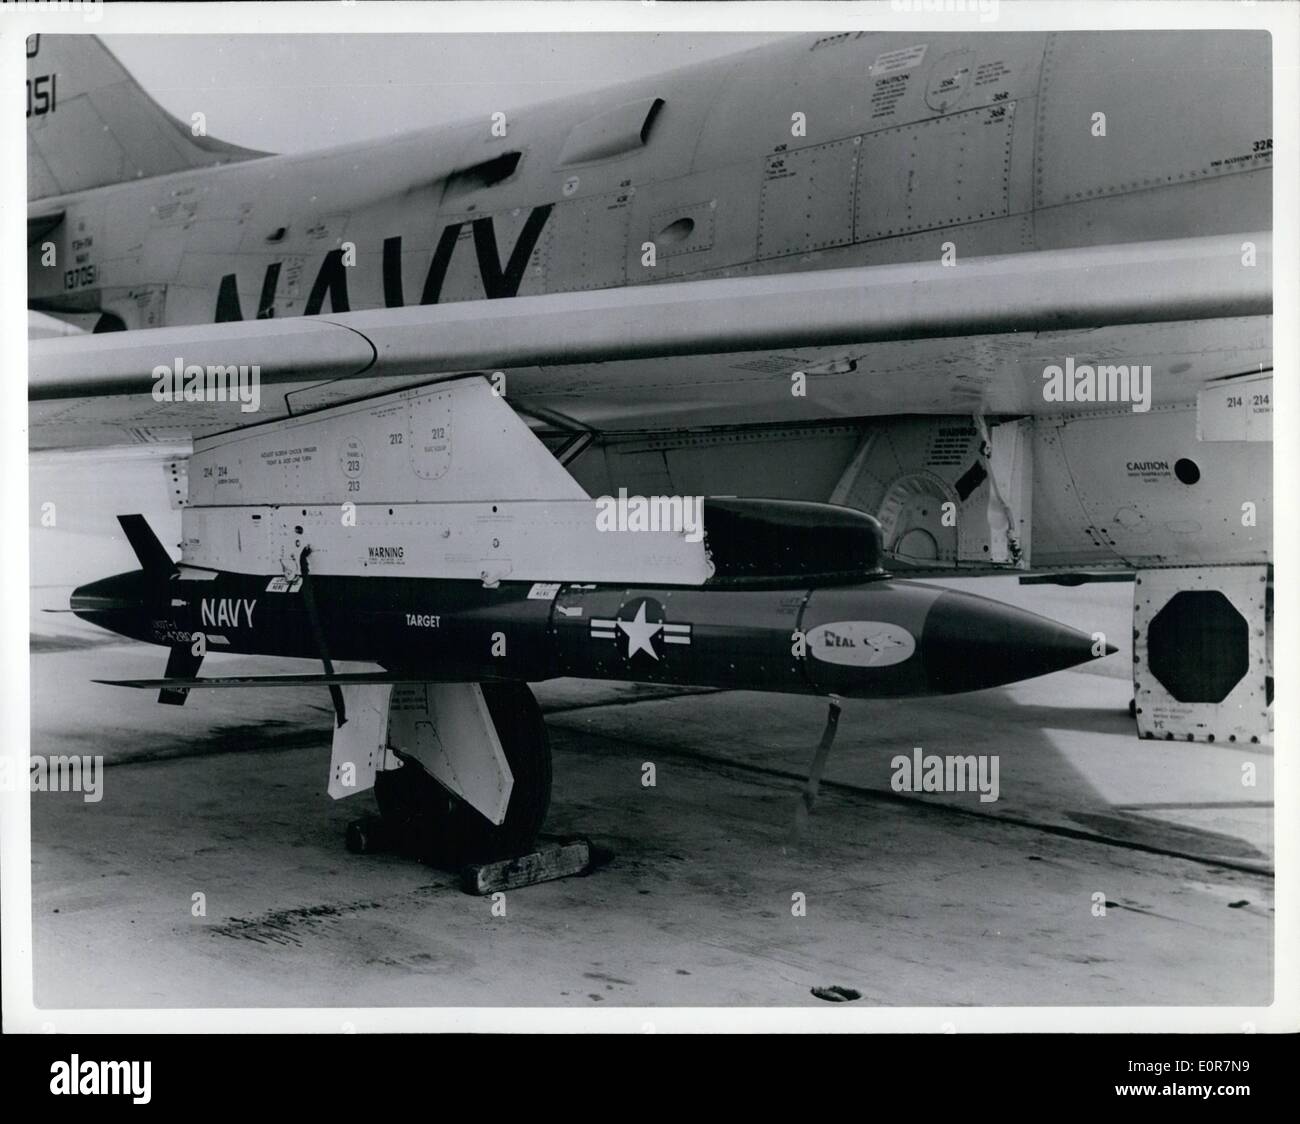 Maggio 06, 1958 - 6-5-58 il XKDT-1. Una Marina aria-missile bersaglio viene mostrata sull'ala di un F3H jet da combattimento. Alimentato da una lunga durata del motore a razzo, il bersaglio della parte soggetta a usura è utilizzato nella formazione dei jet da combattimento per i piloti in combattimento air-air. Il XKDT-1 è fabbricato dalla Temco Aircraft Corporation di Dallas, Texas. Foto Stock